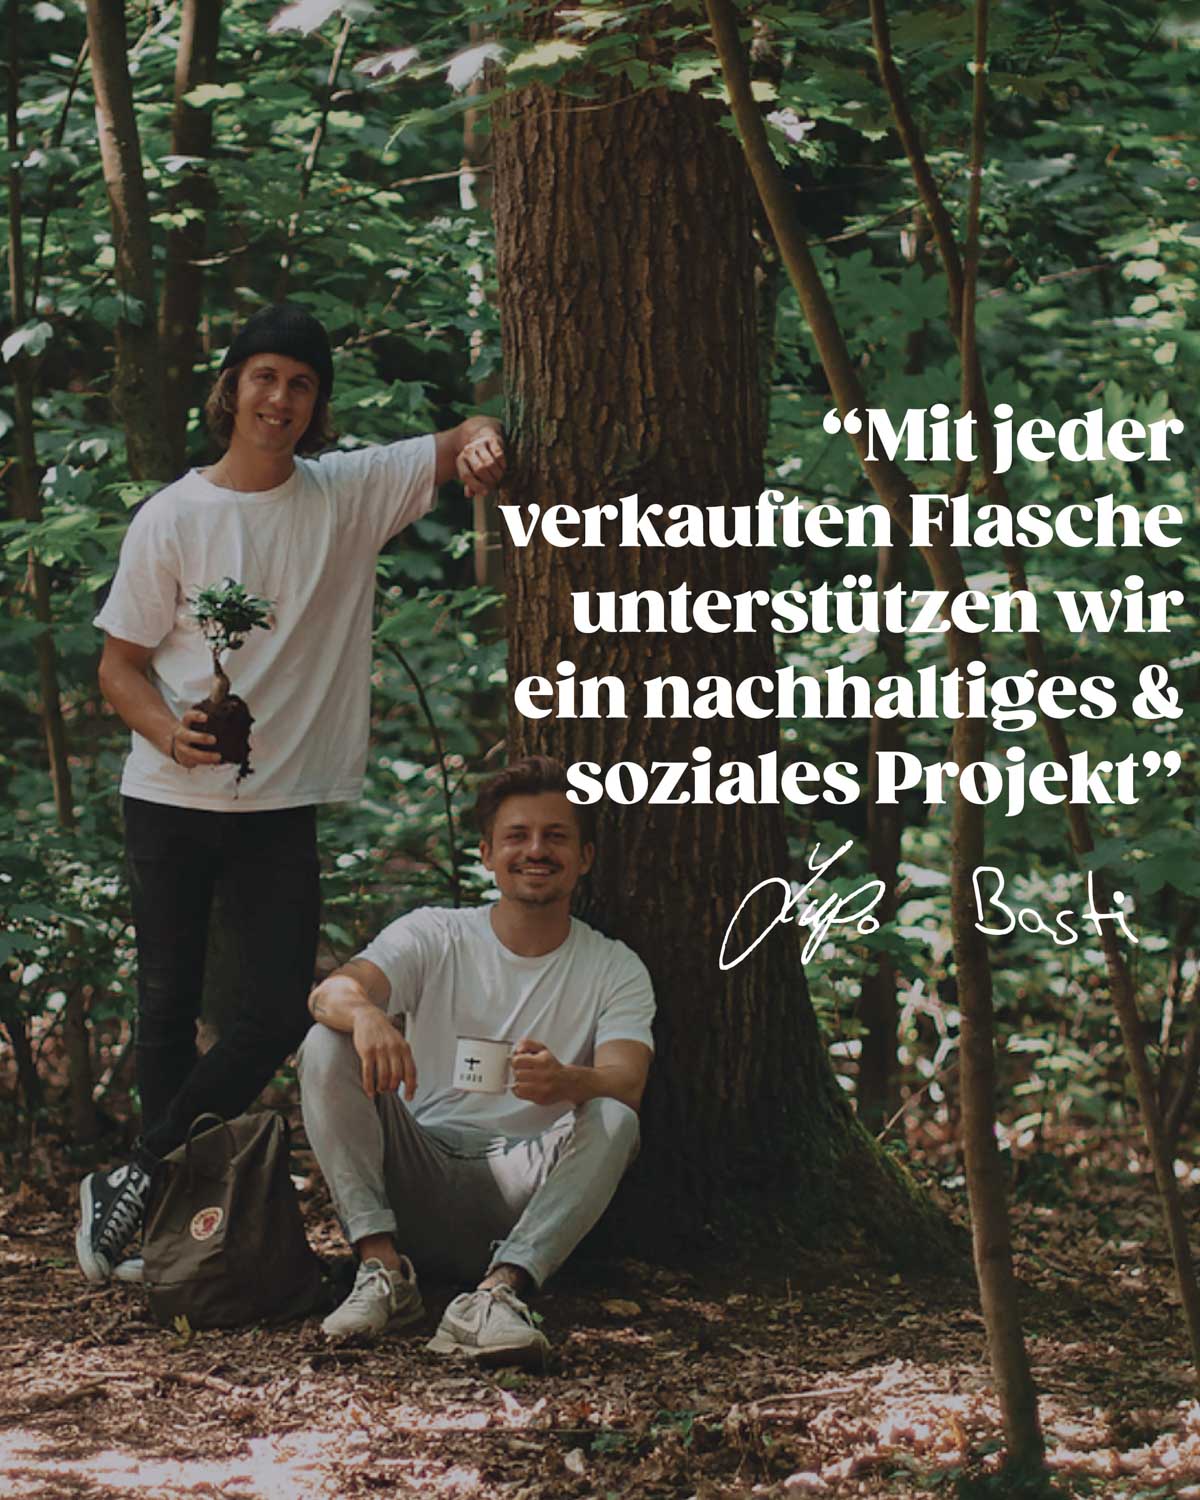 Zu sehen sind Basti und Lupo die beiden Gründer unseres Start-Ups. Sie befinden sich in einem Wald und lehnen an einen Baum. Basti hält außerdem einen kleinen Baum in der Hand, der eingepflanzt werden kann. Lupo die Camping Tasse mit dem Logo von BIRDS. Im Vordergrund steht das inspirierende Zitat der beiden: "Mit jeder verkauften Flasche unterstützen wir ein nachhaltiges und soziales Projekt". 